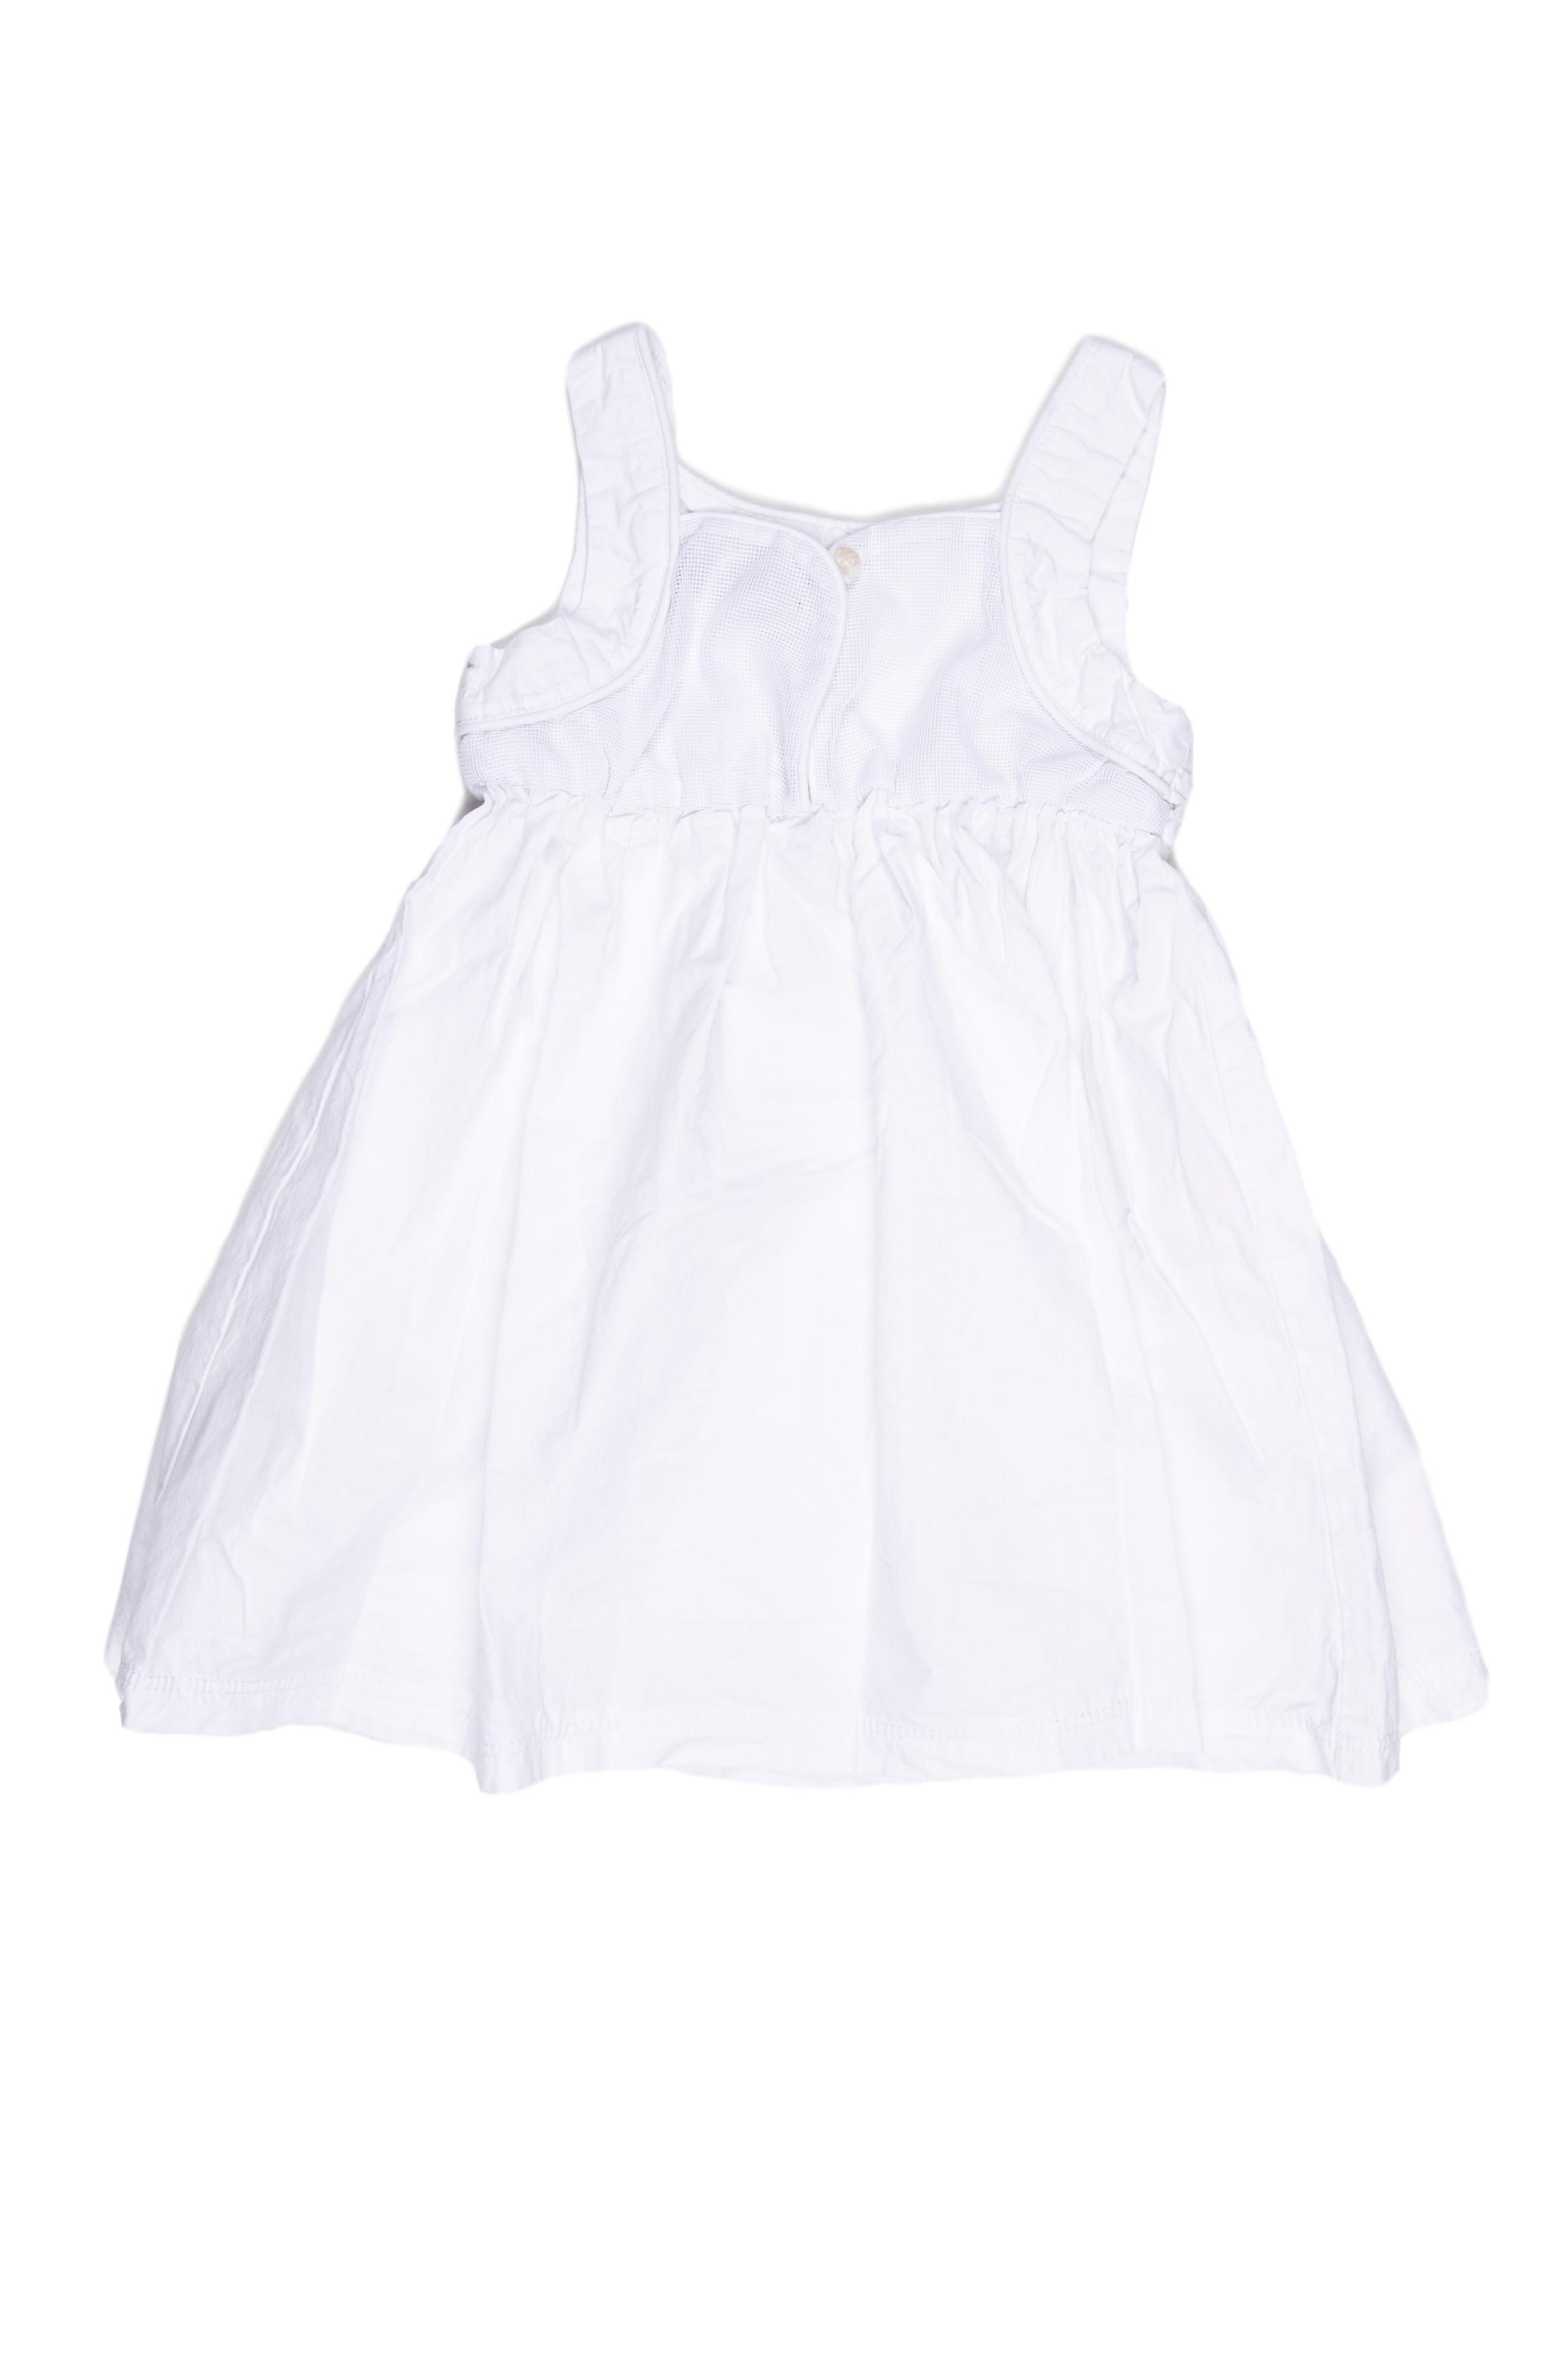 Vestido tiritas blanco, muy fresco. Pecho de tela texturada y espalda de tul. 100% algodón (talla europea 100) - Harvest